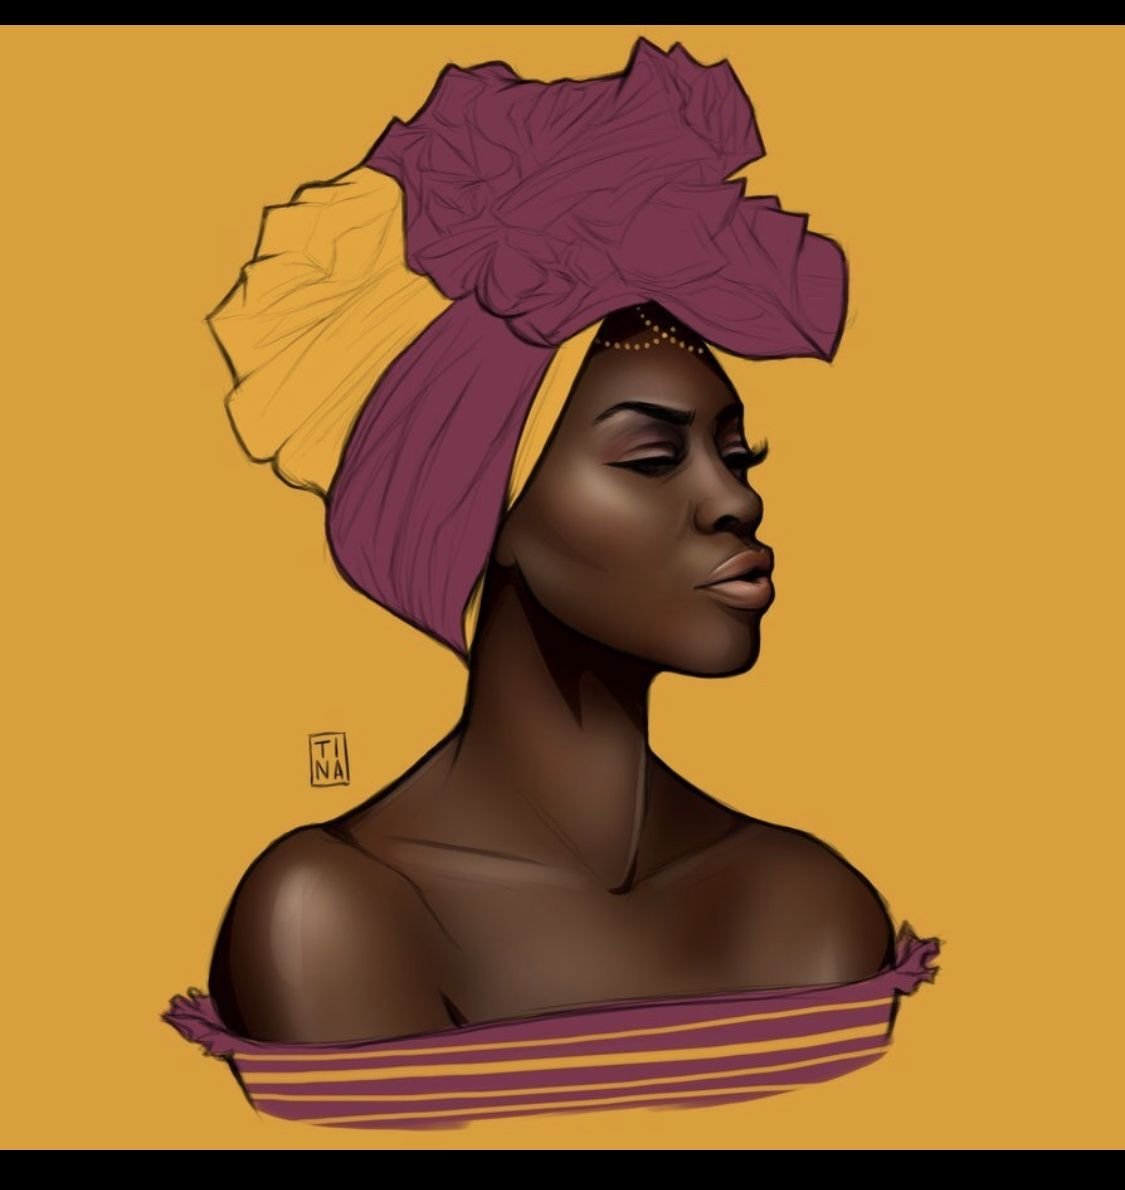 Резиновая негритянка. Портрет негритянки. Темнокожая женщина арт. Афроамериканки арт. Портрет афроамериканки.